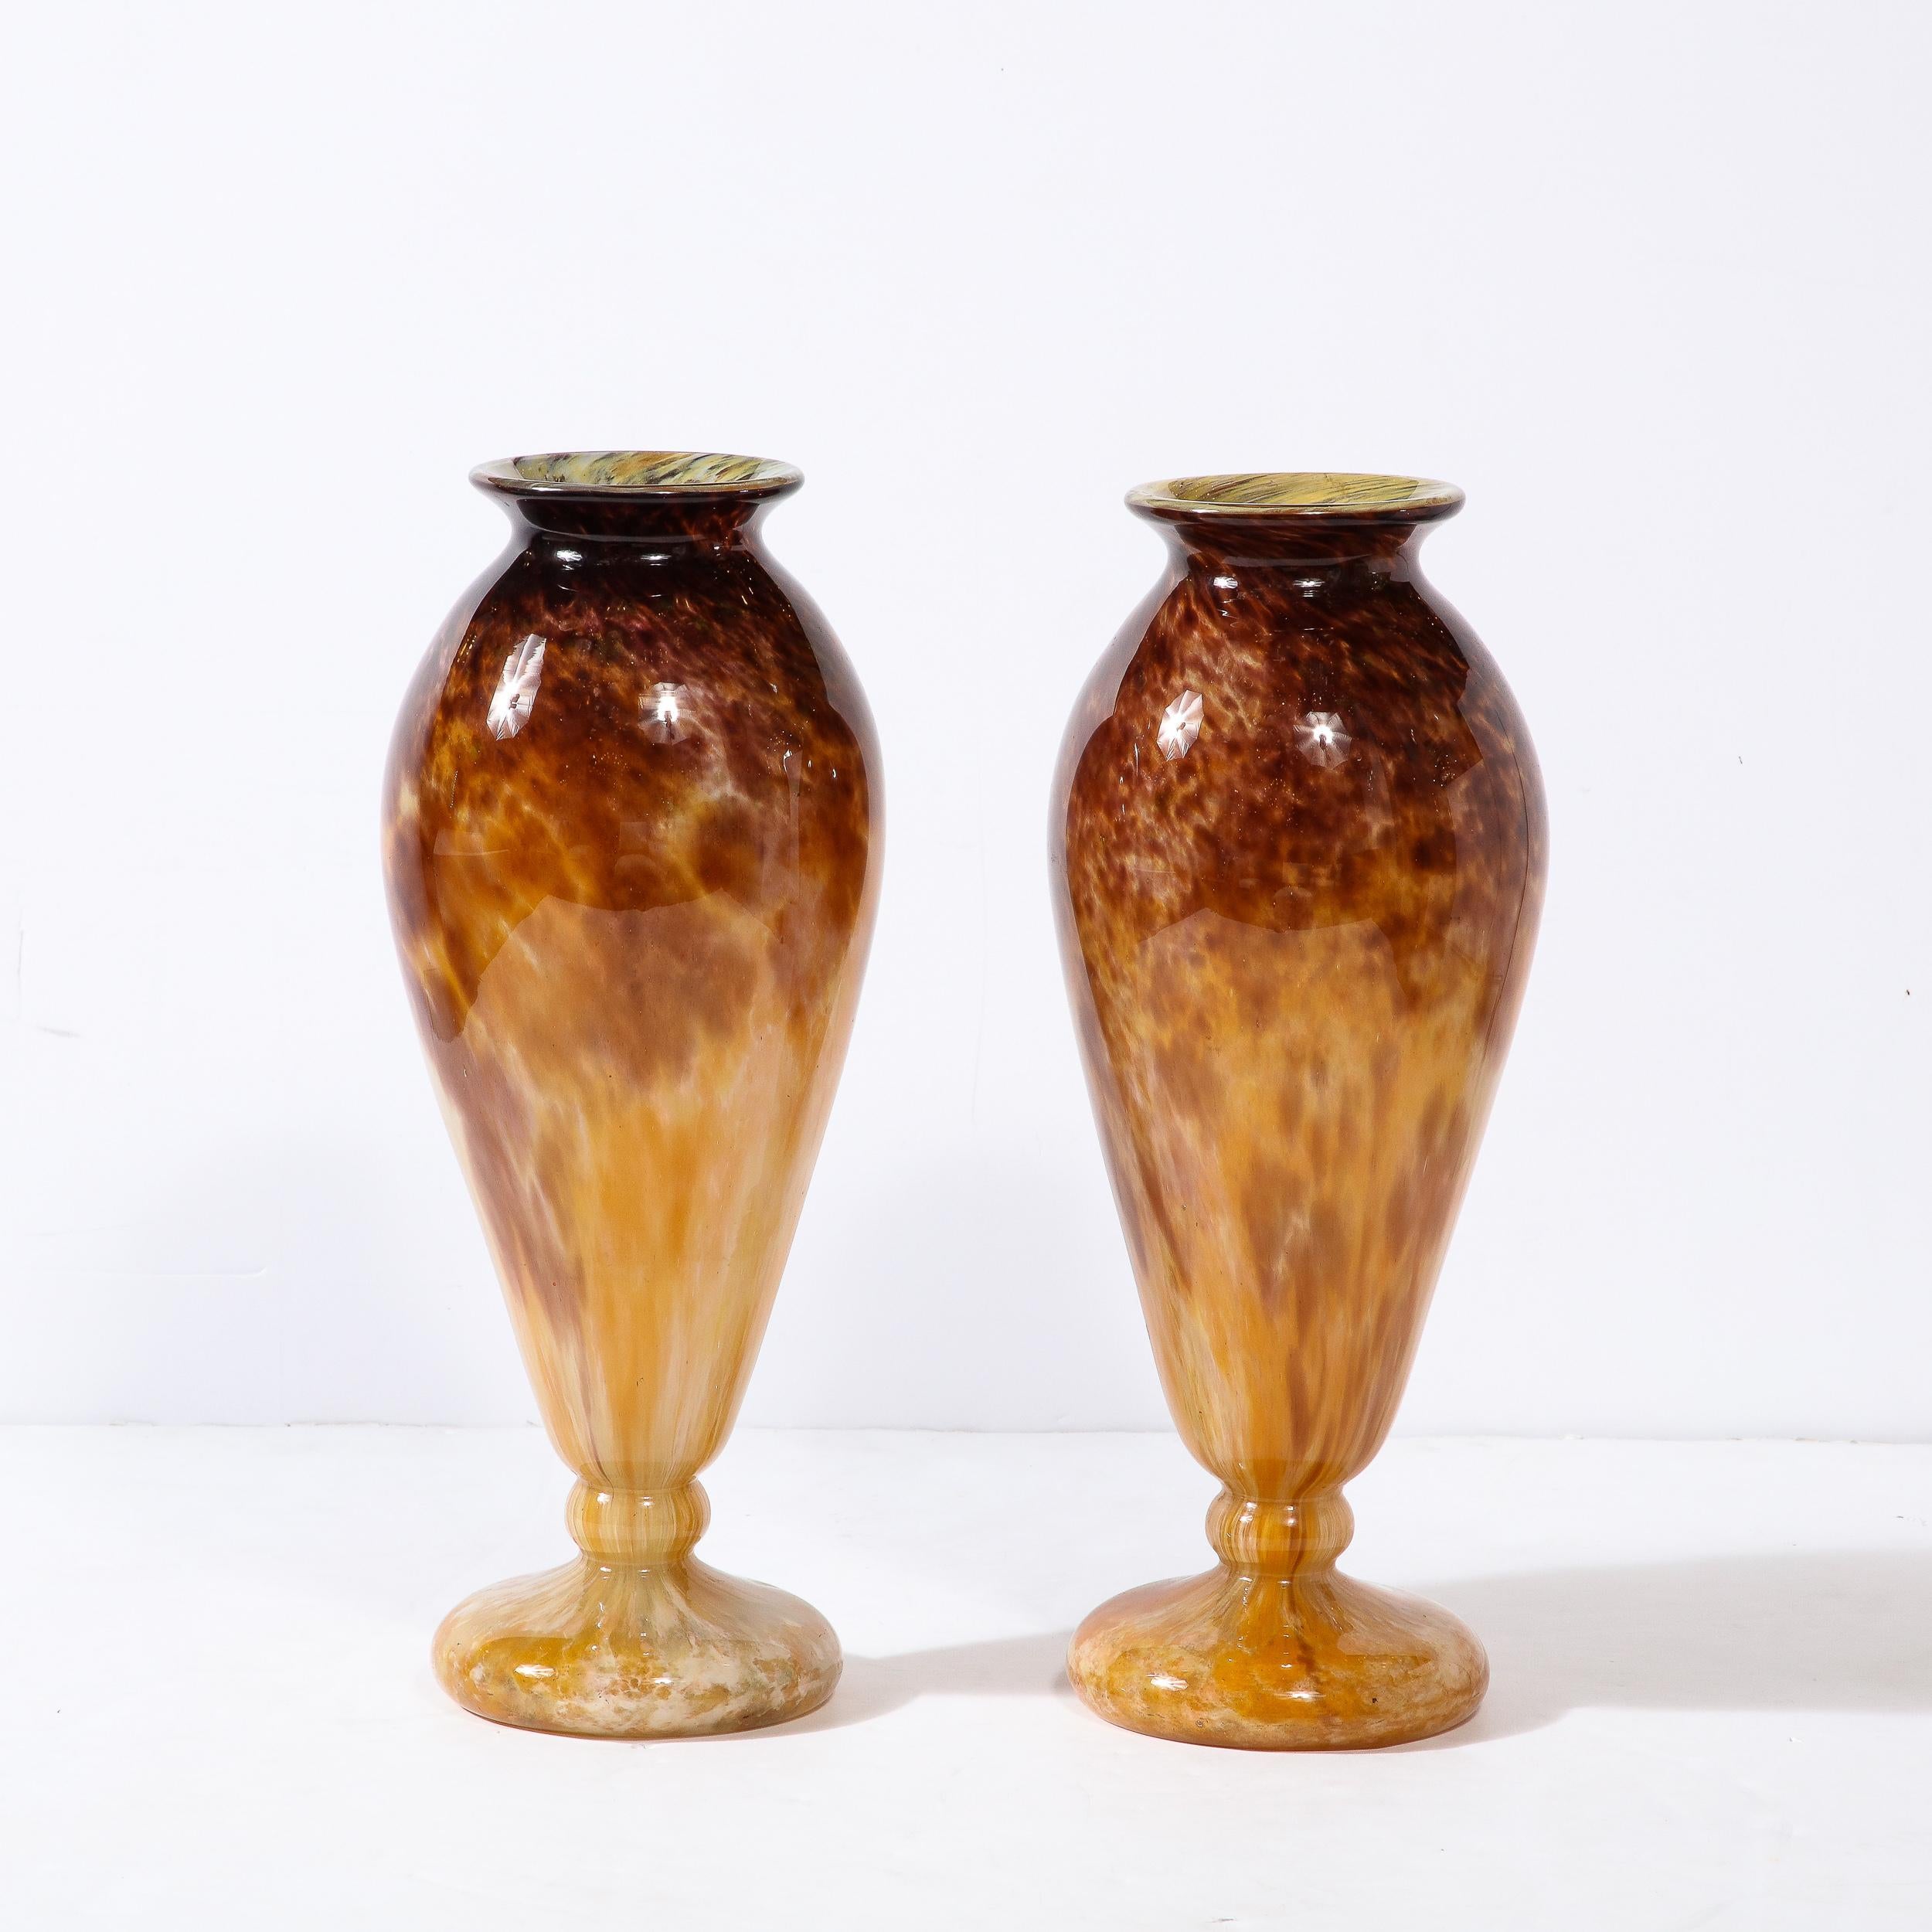 Cette magnifique paire de vases Art déco en verre fumé améthyste et ambre a été fabriquée par Schneider et provient de France, vers 1925. Avec un profil large et des proportions extrêmement élégantes, ils se caractérisent par des ouvertures étendues